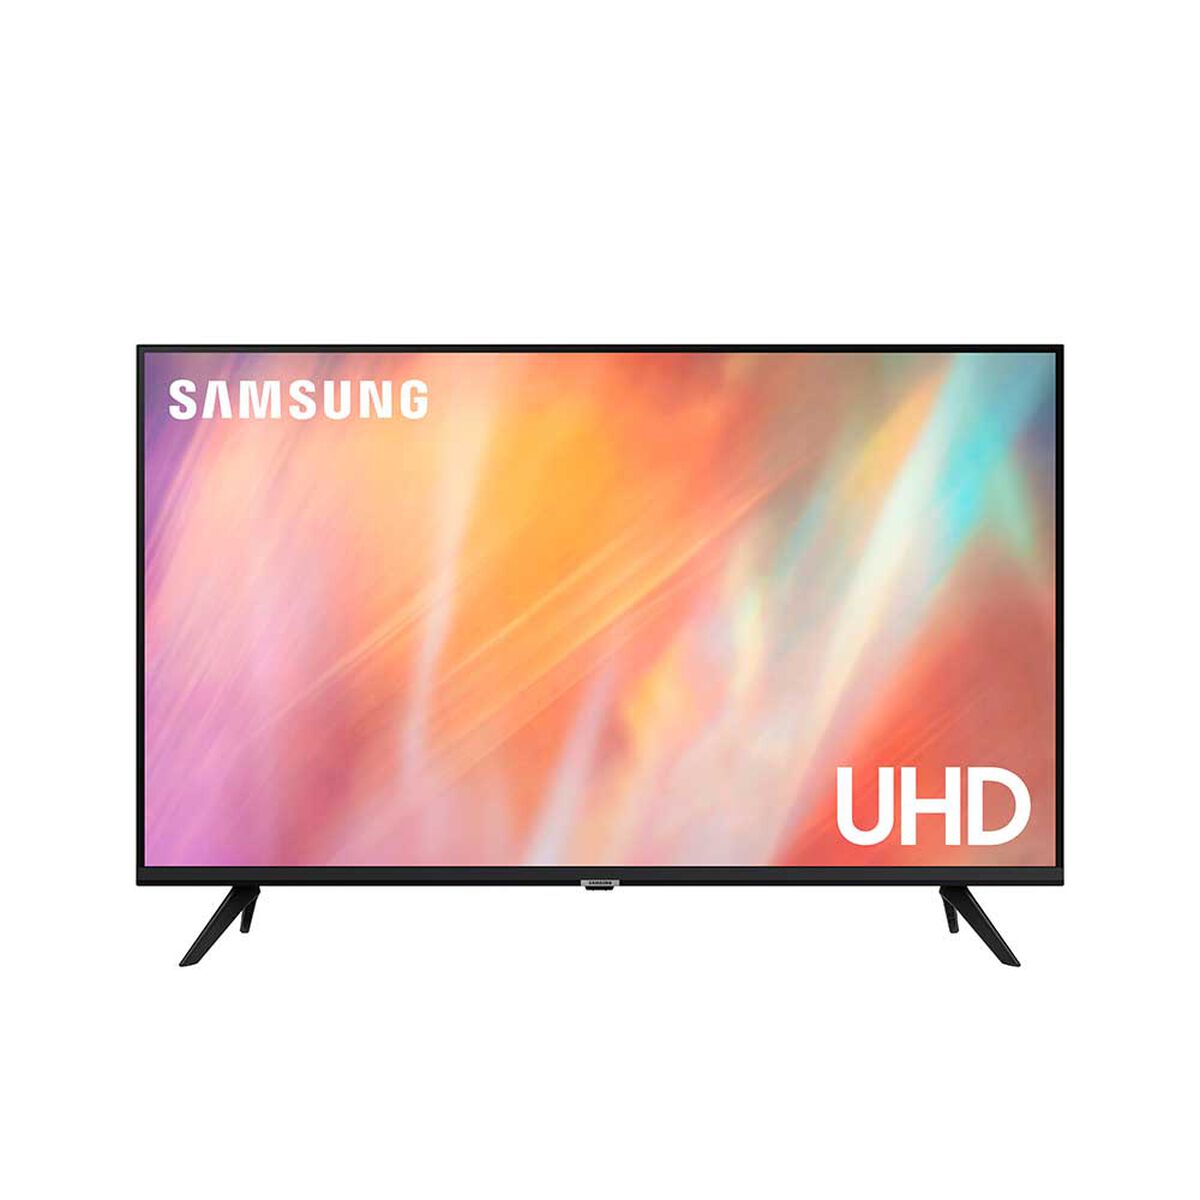 LED 43" Samsung UN43AU7090 Smart TV 4K UHD